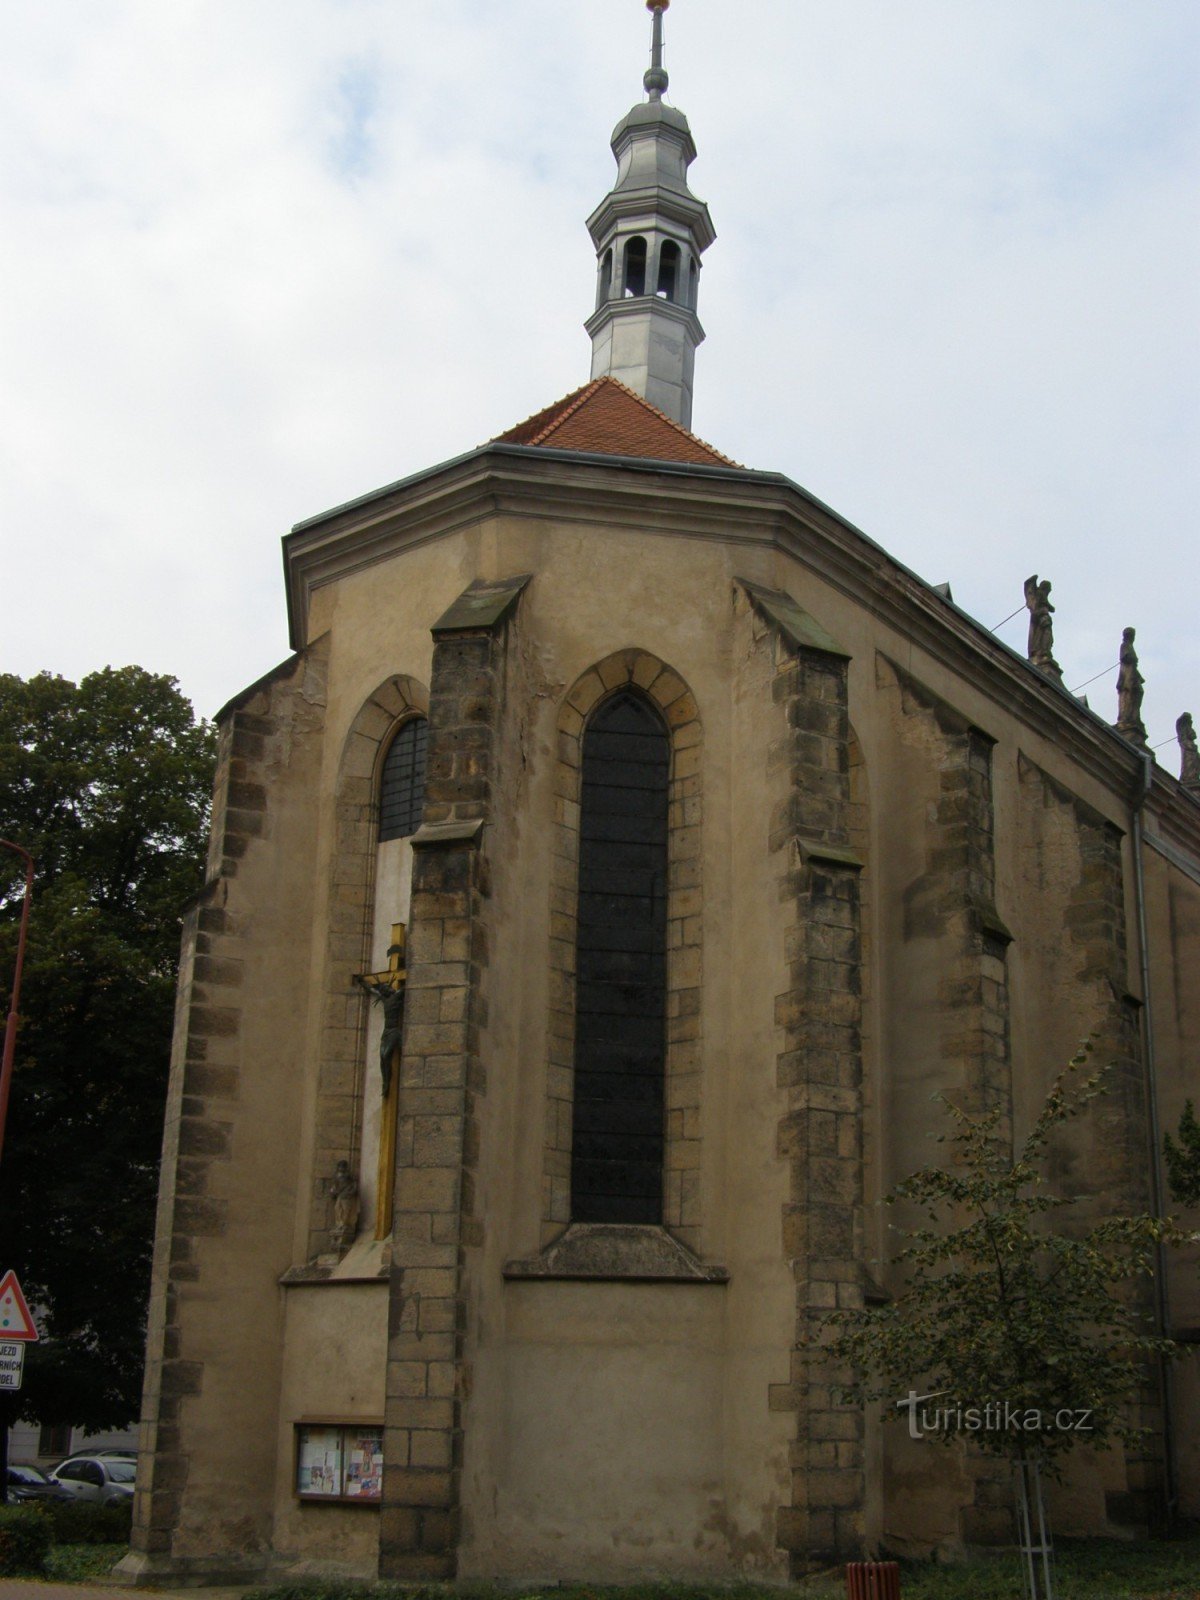 Nový Bydžov - igreja de St. Lourenço